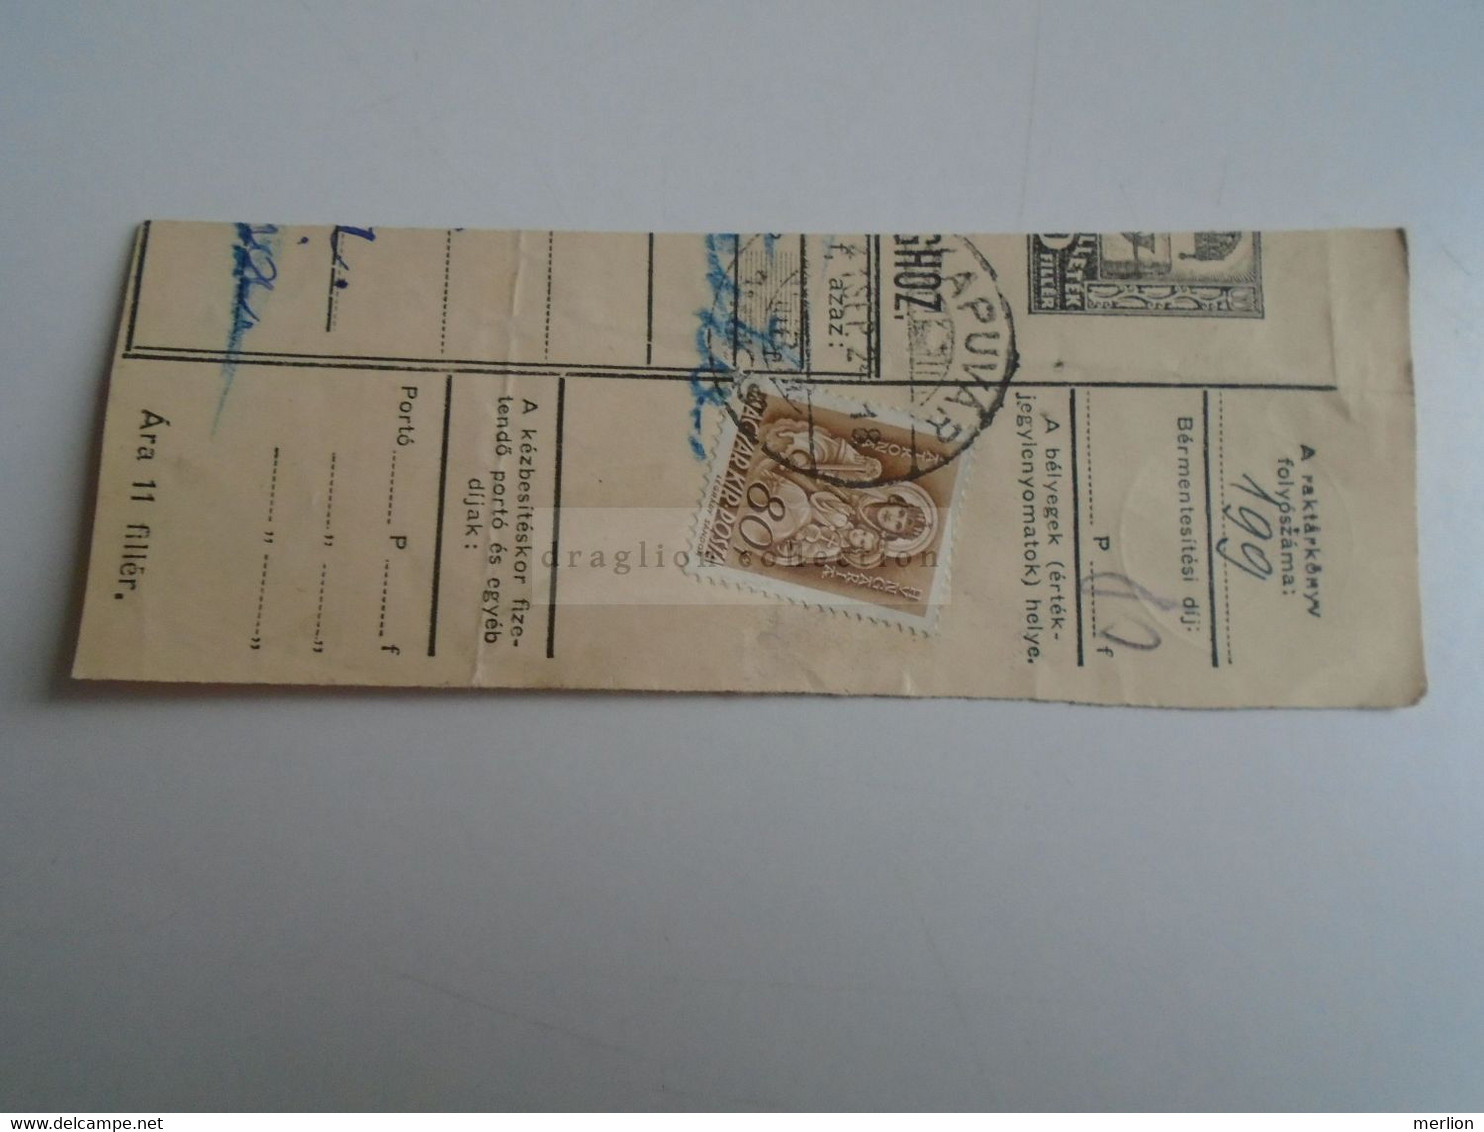 D187442   Parcel Card  (cut) Hungary 1941  Kapuvár -Tüskevár - Paketmarken